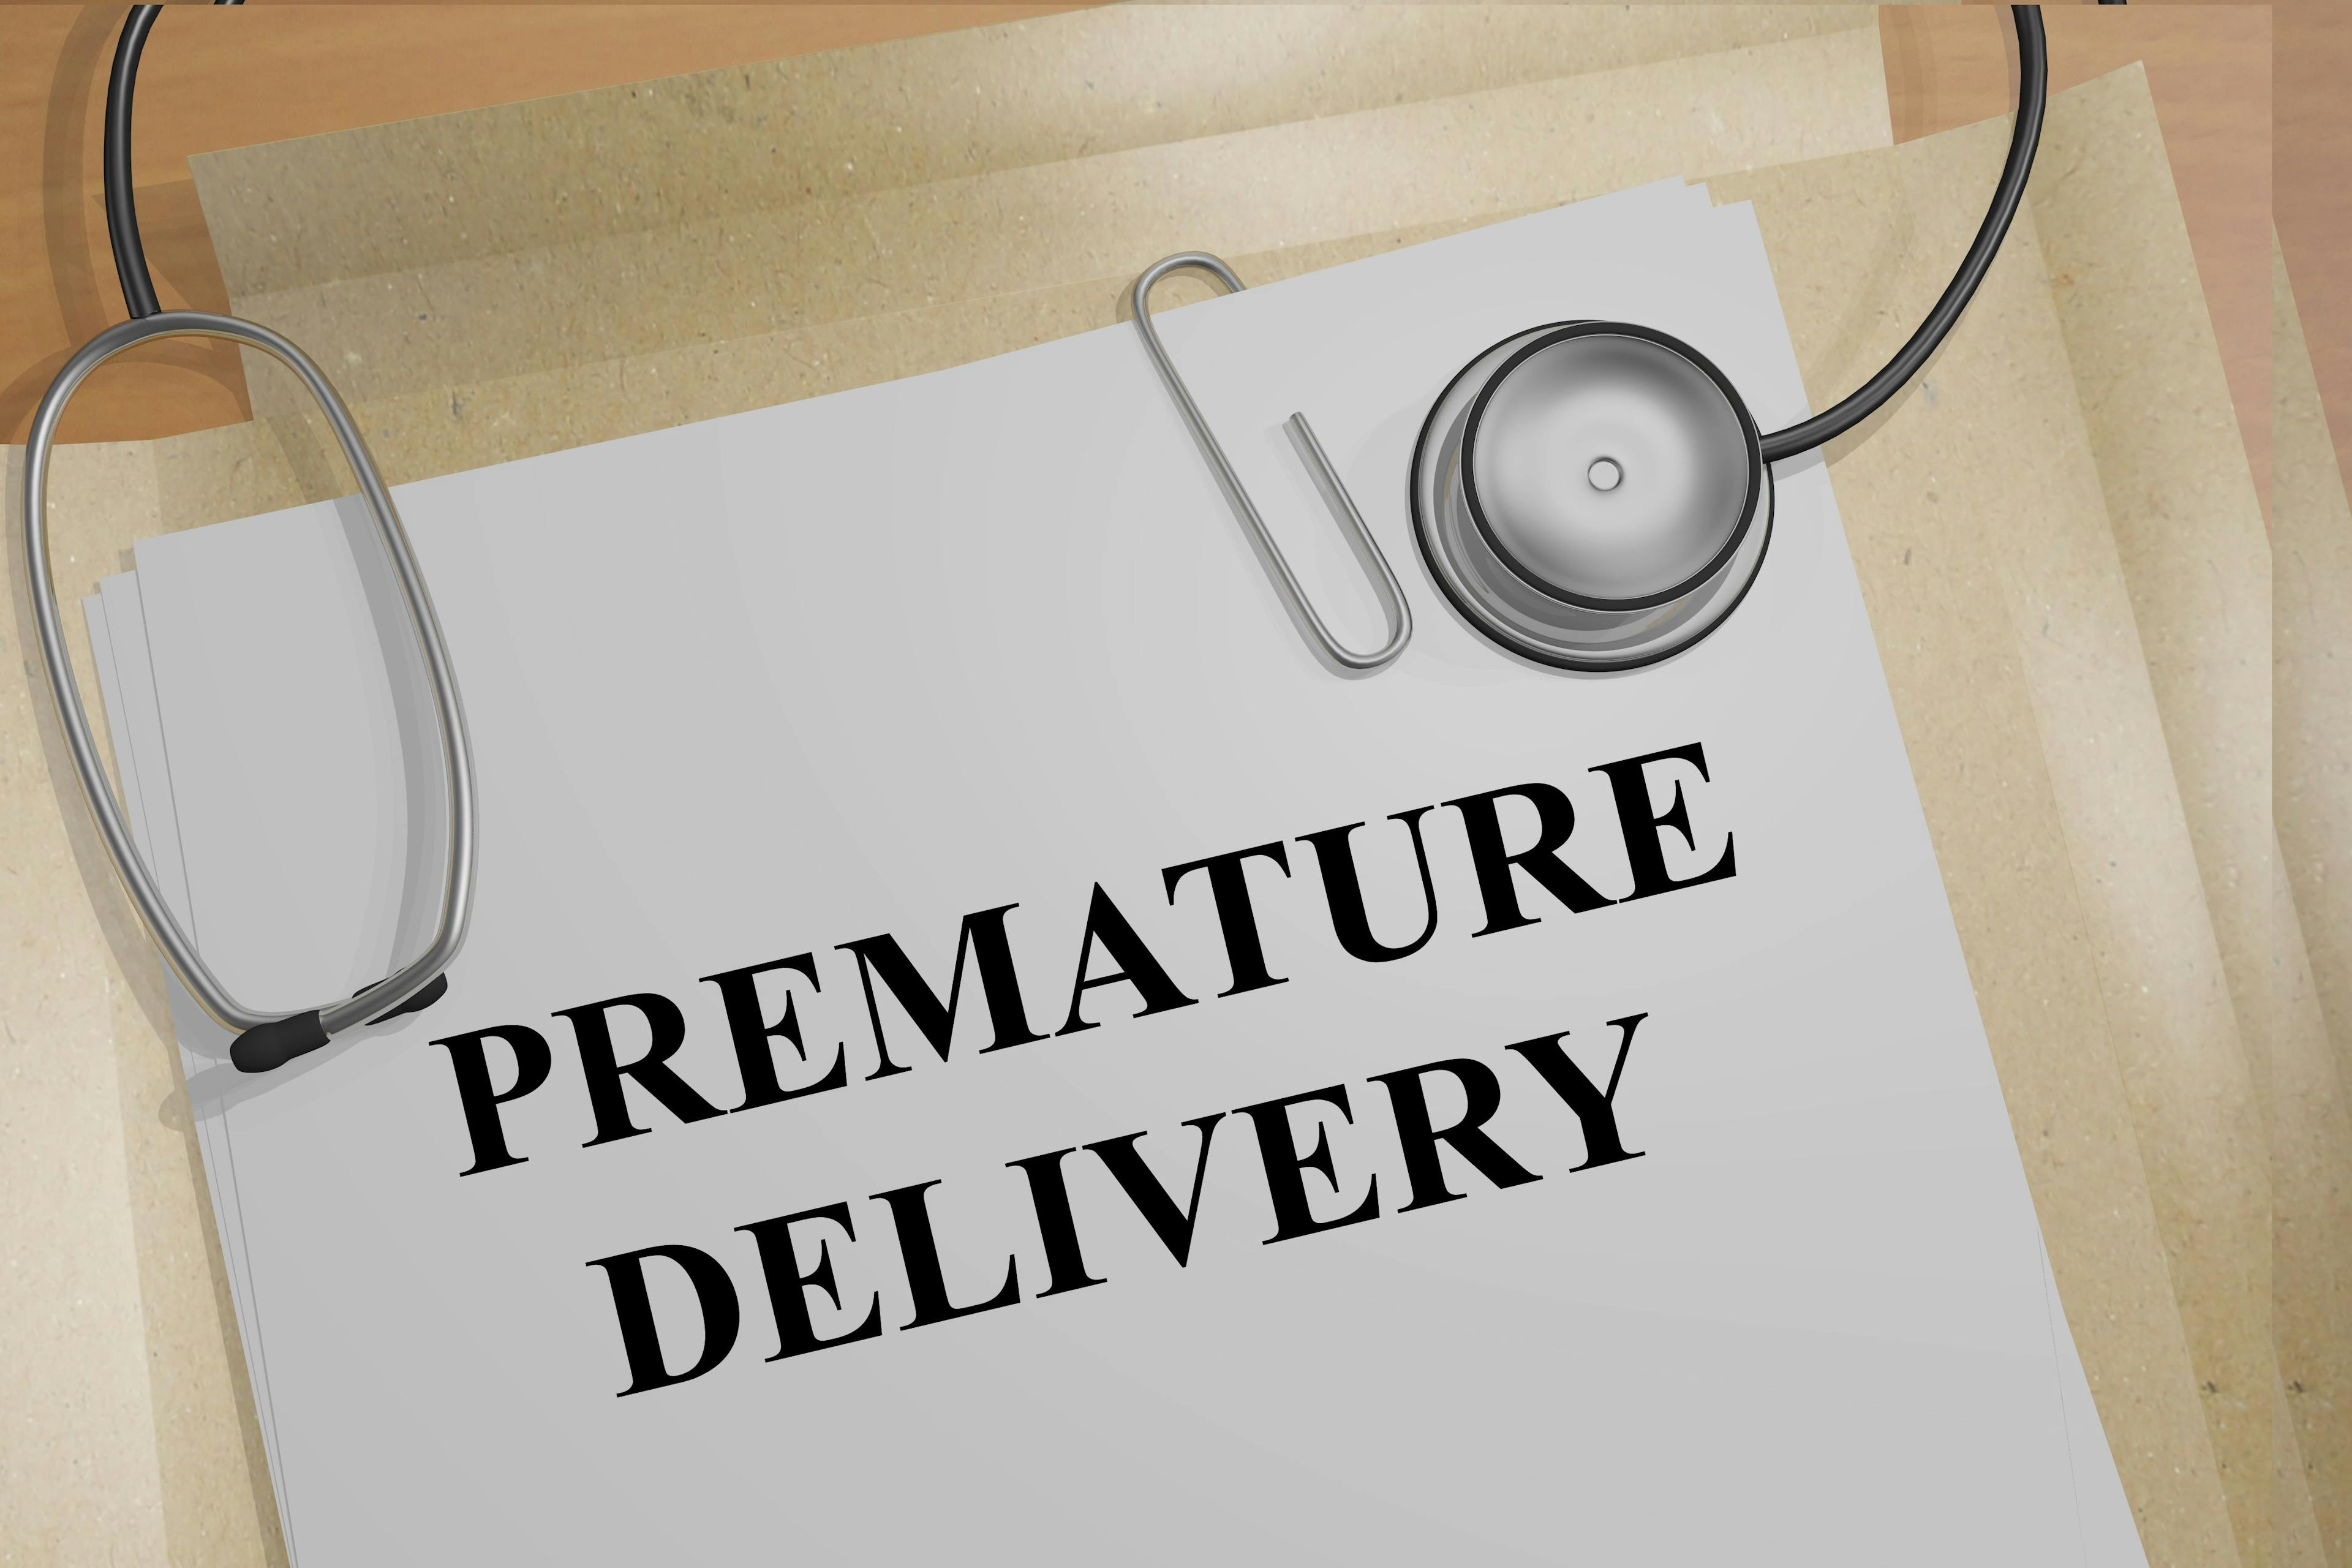 Premature delivery